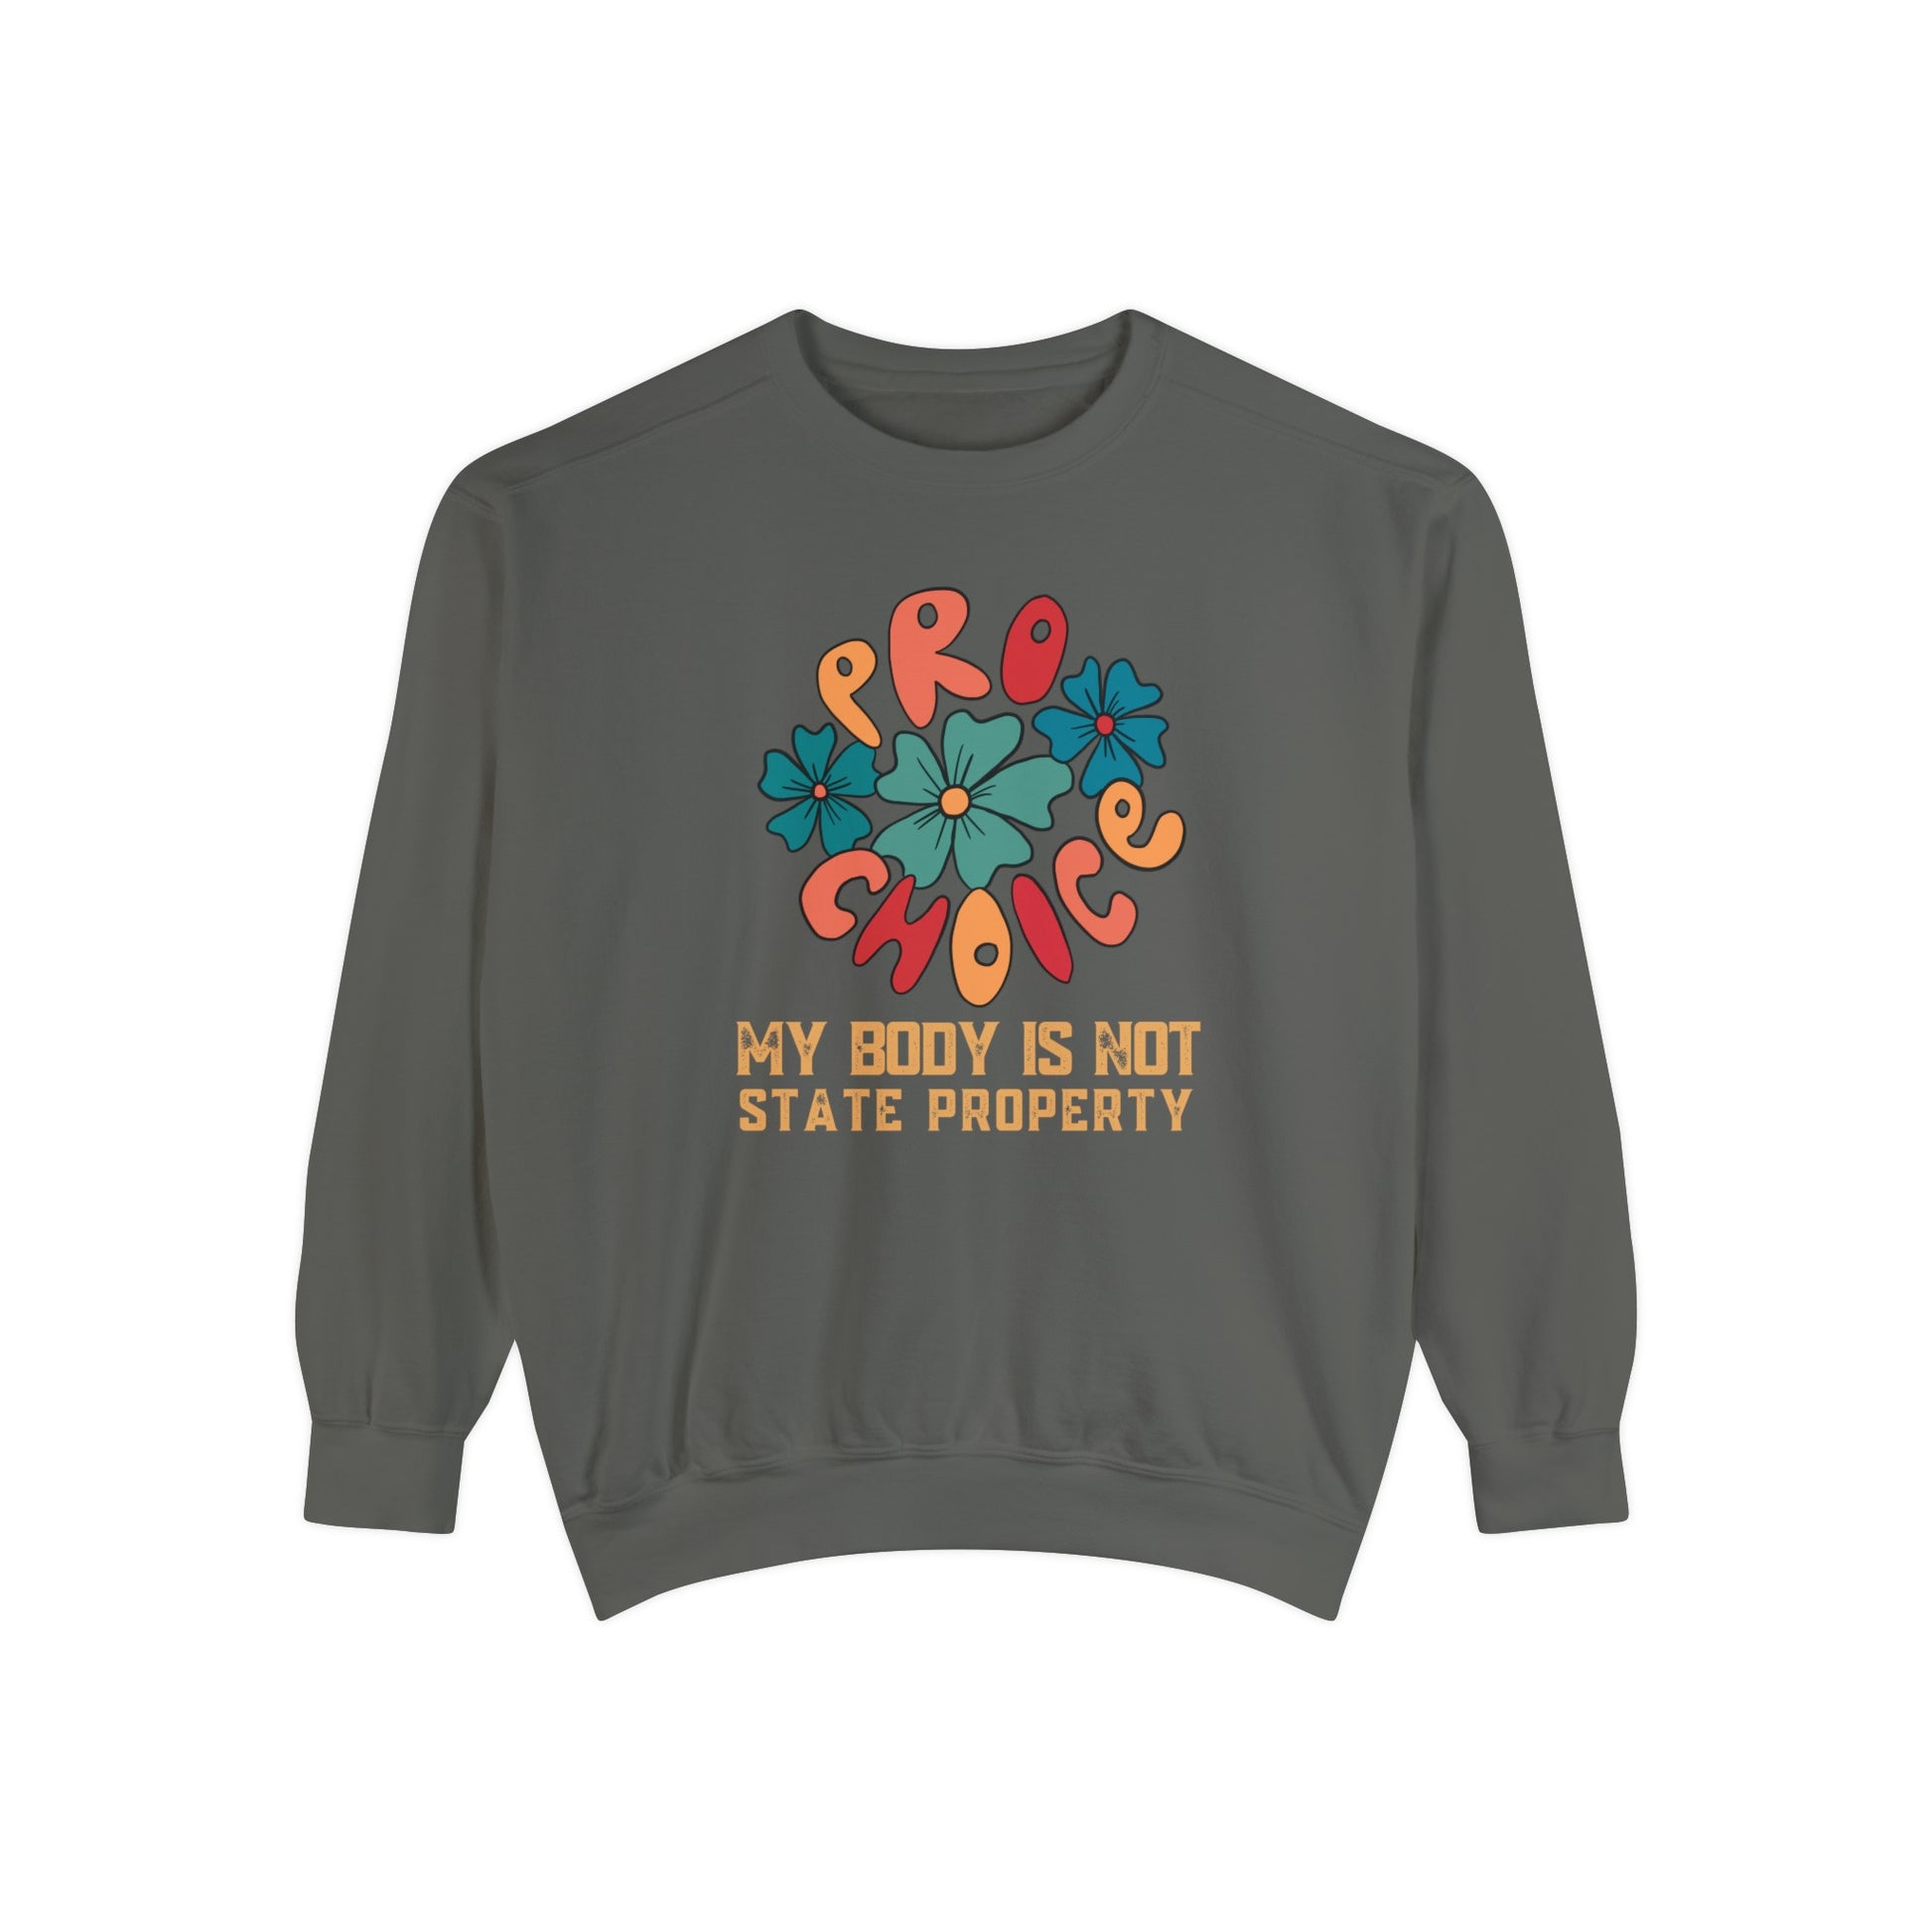 Pepper color CC 1566 pro-choice sweatshirt